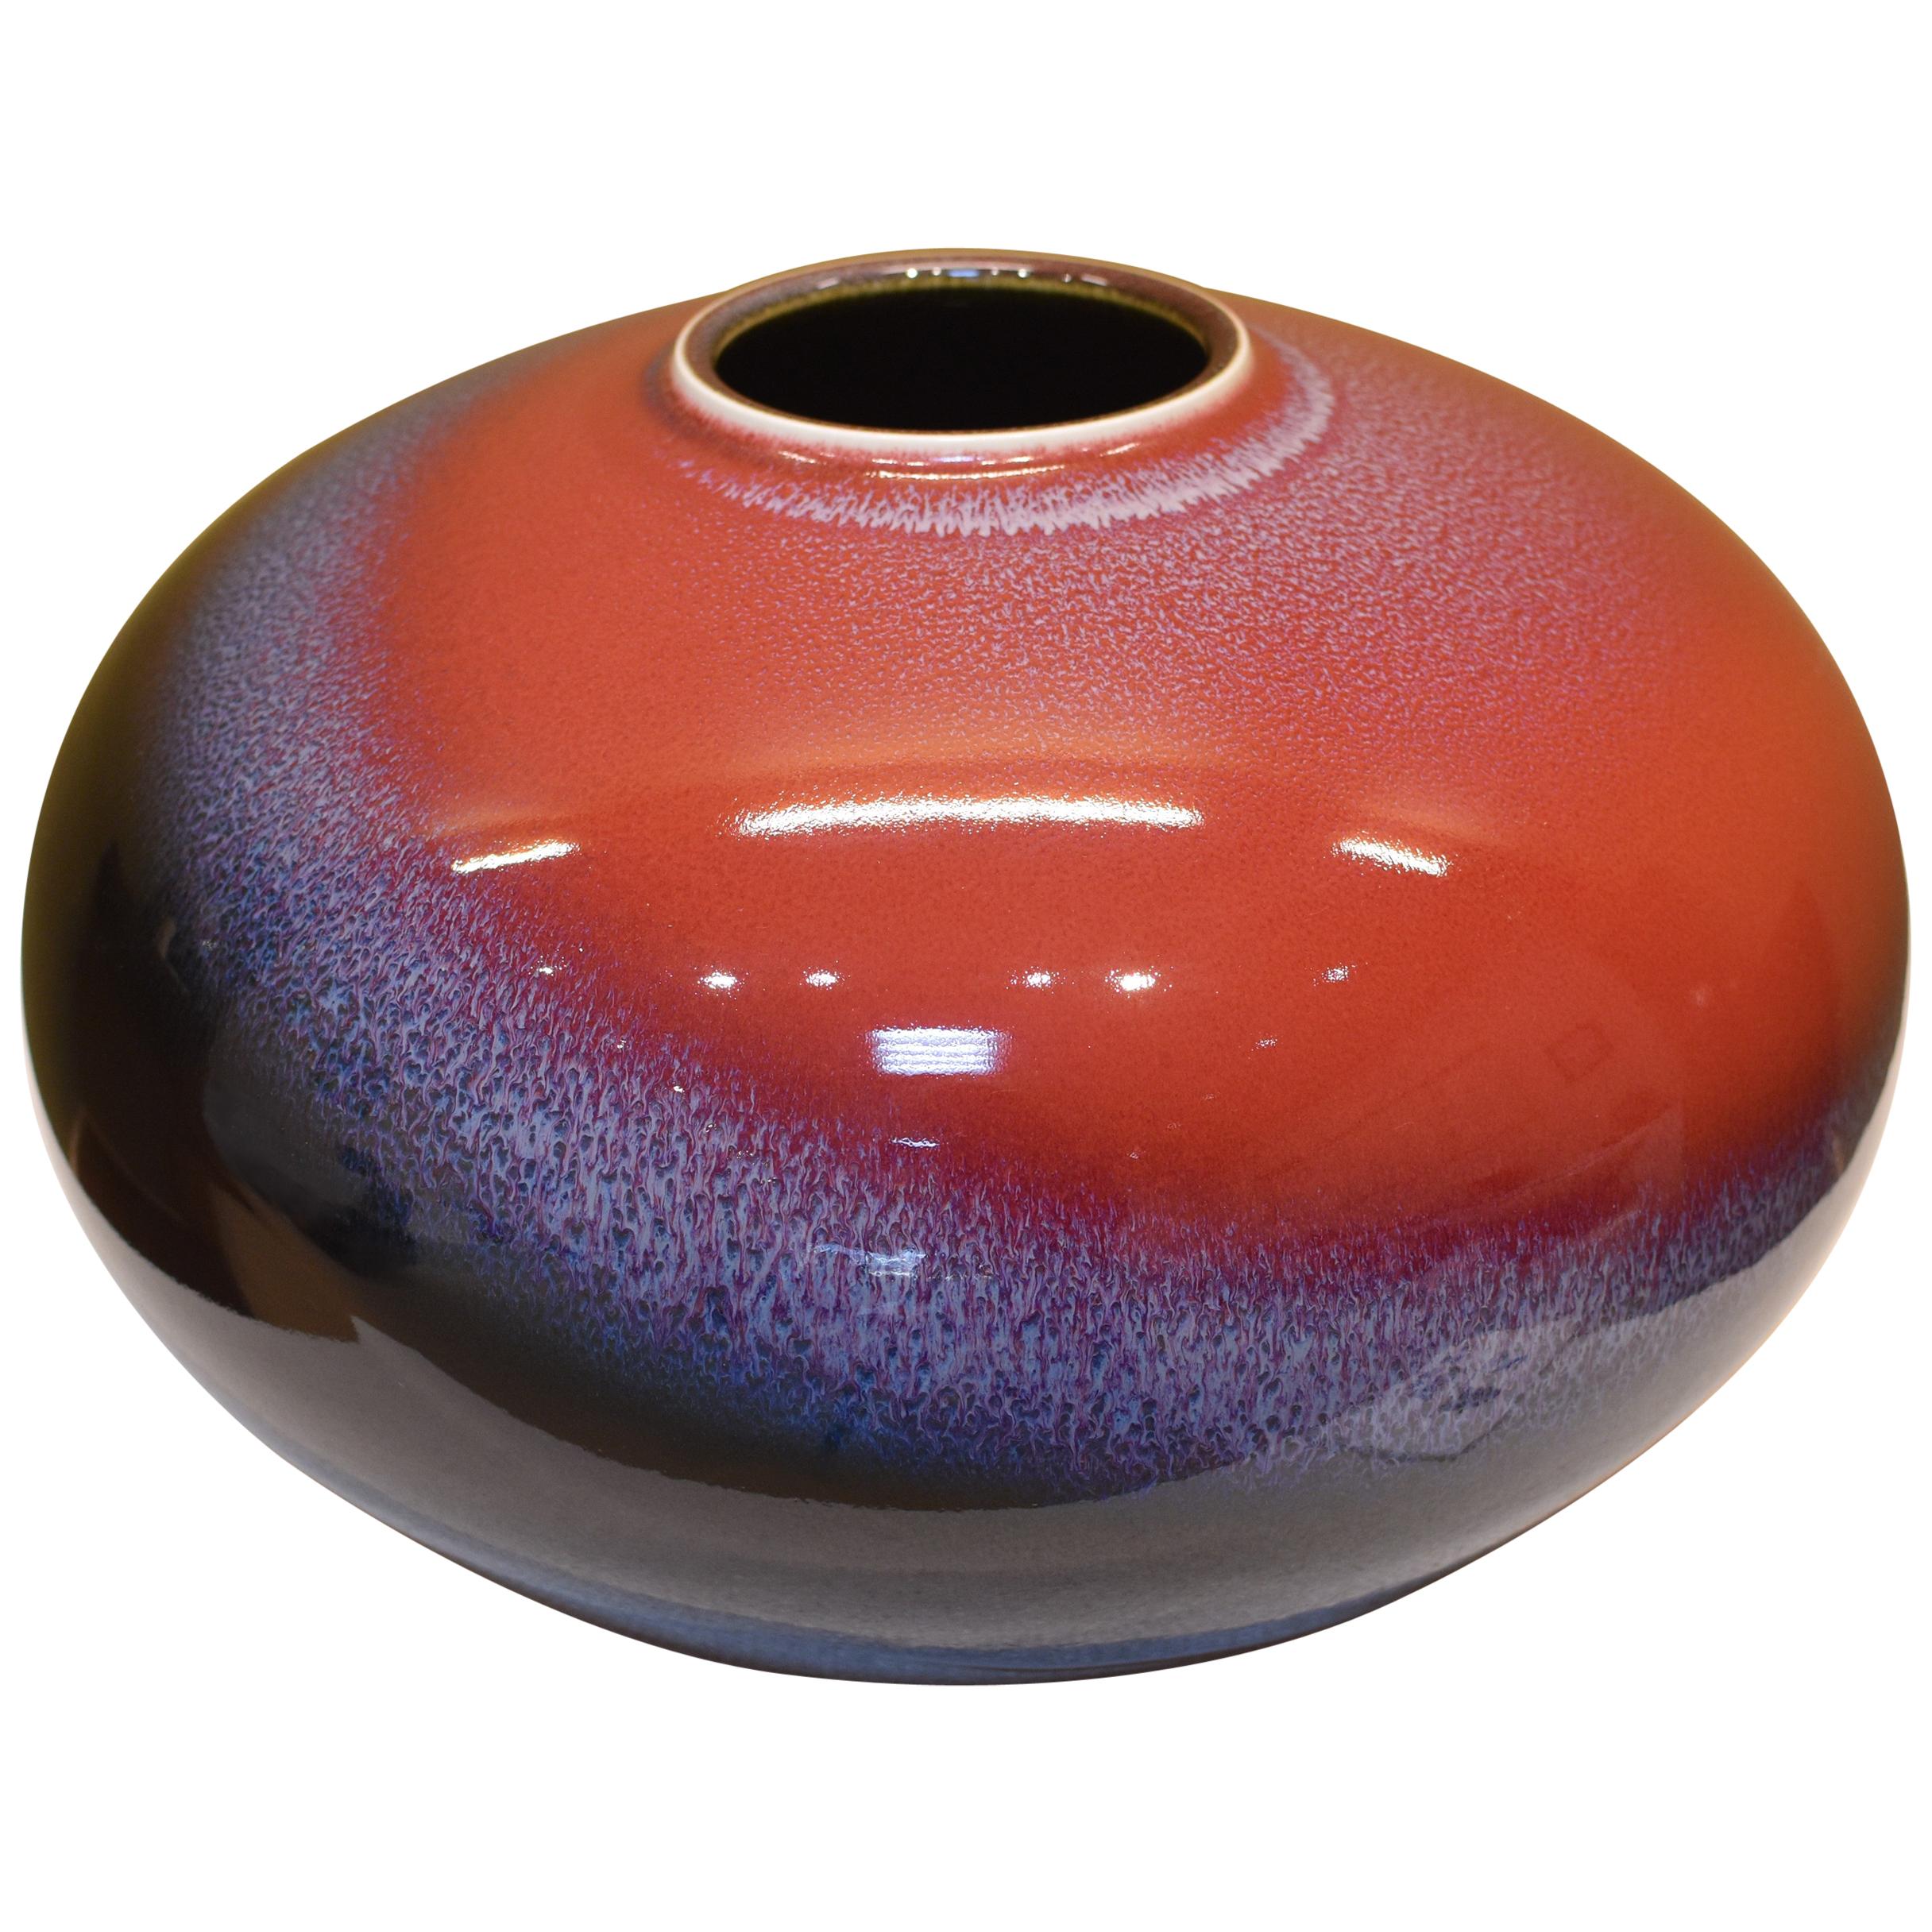 Fait main Vase japonais contemporain en porcelaine rouge et noire vernissée à la main par un maître artiste, 2 en vente